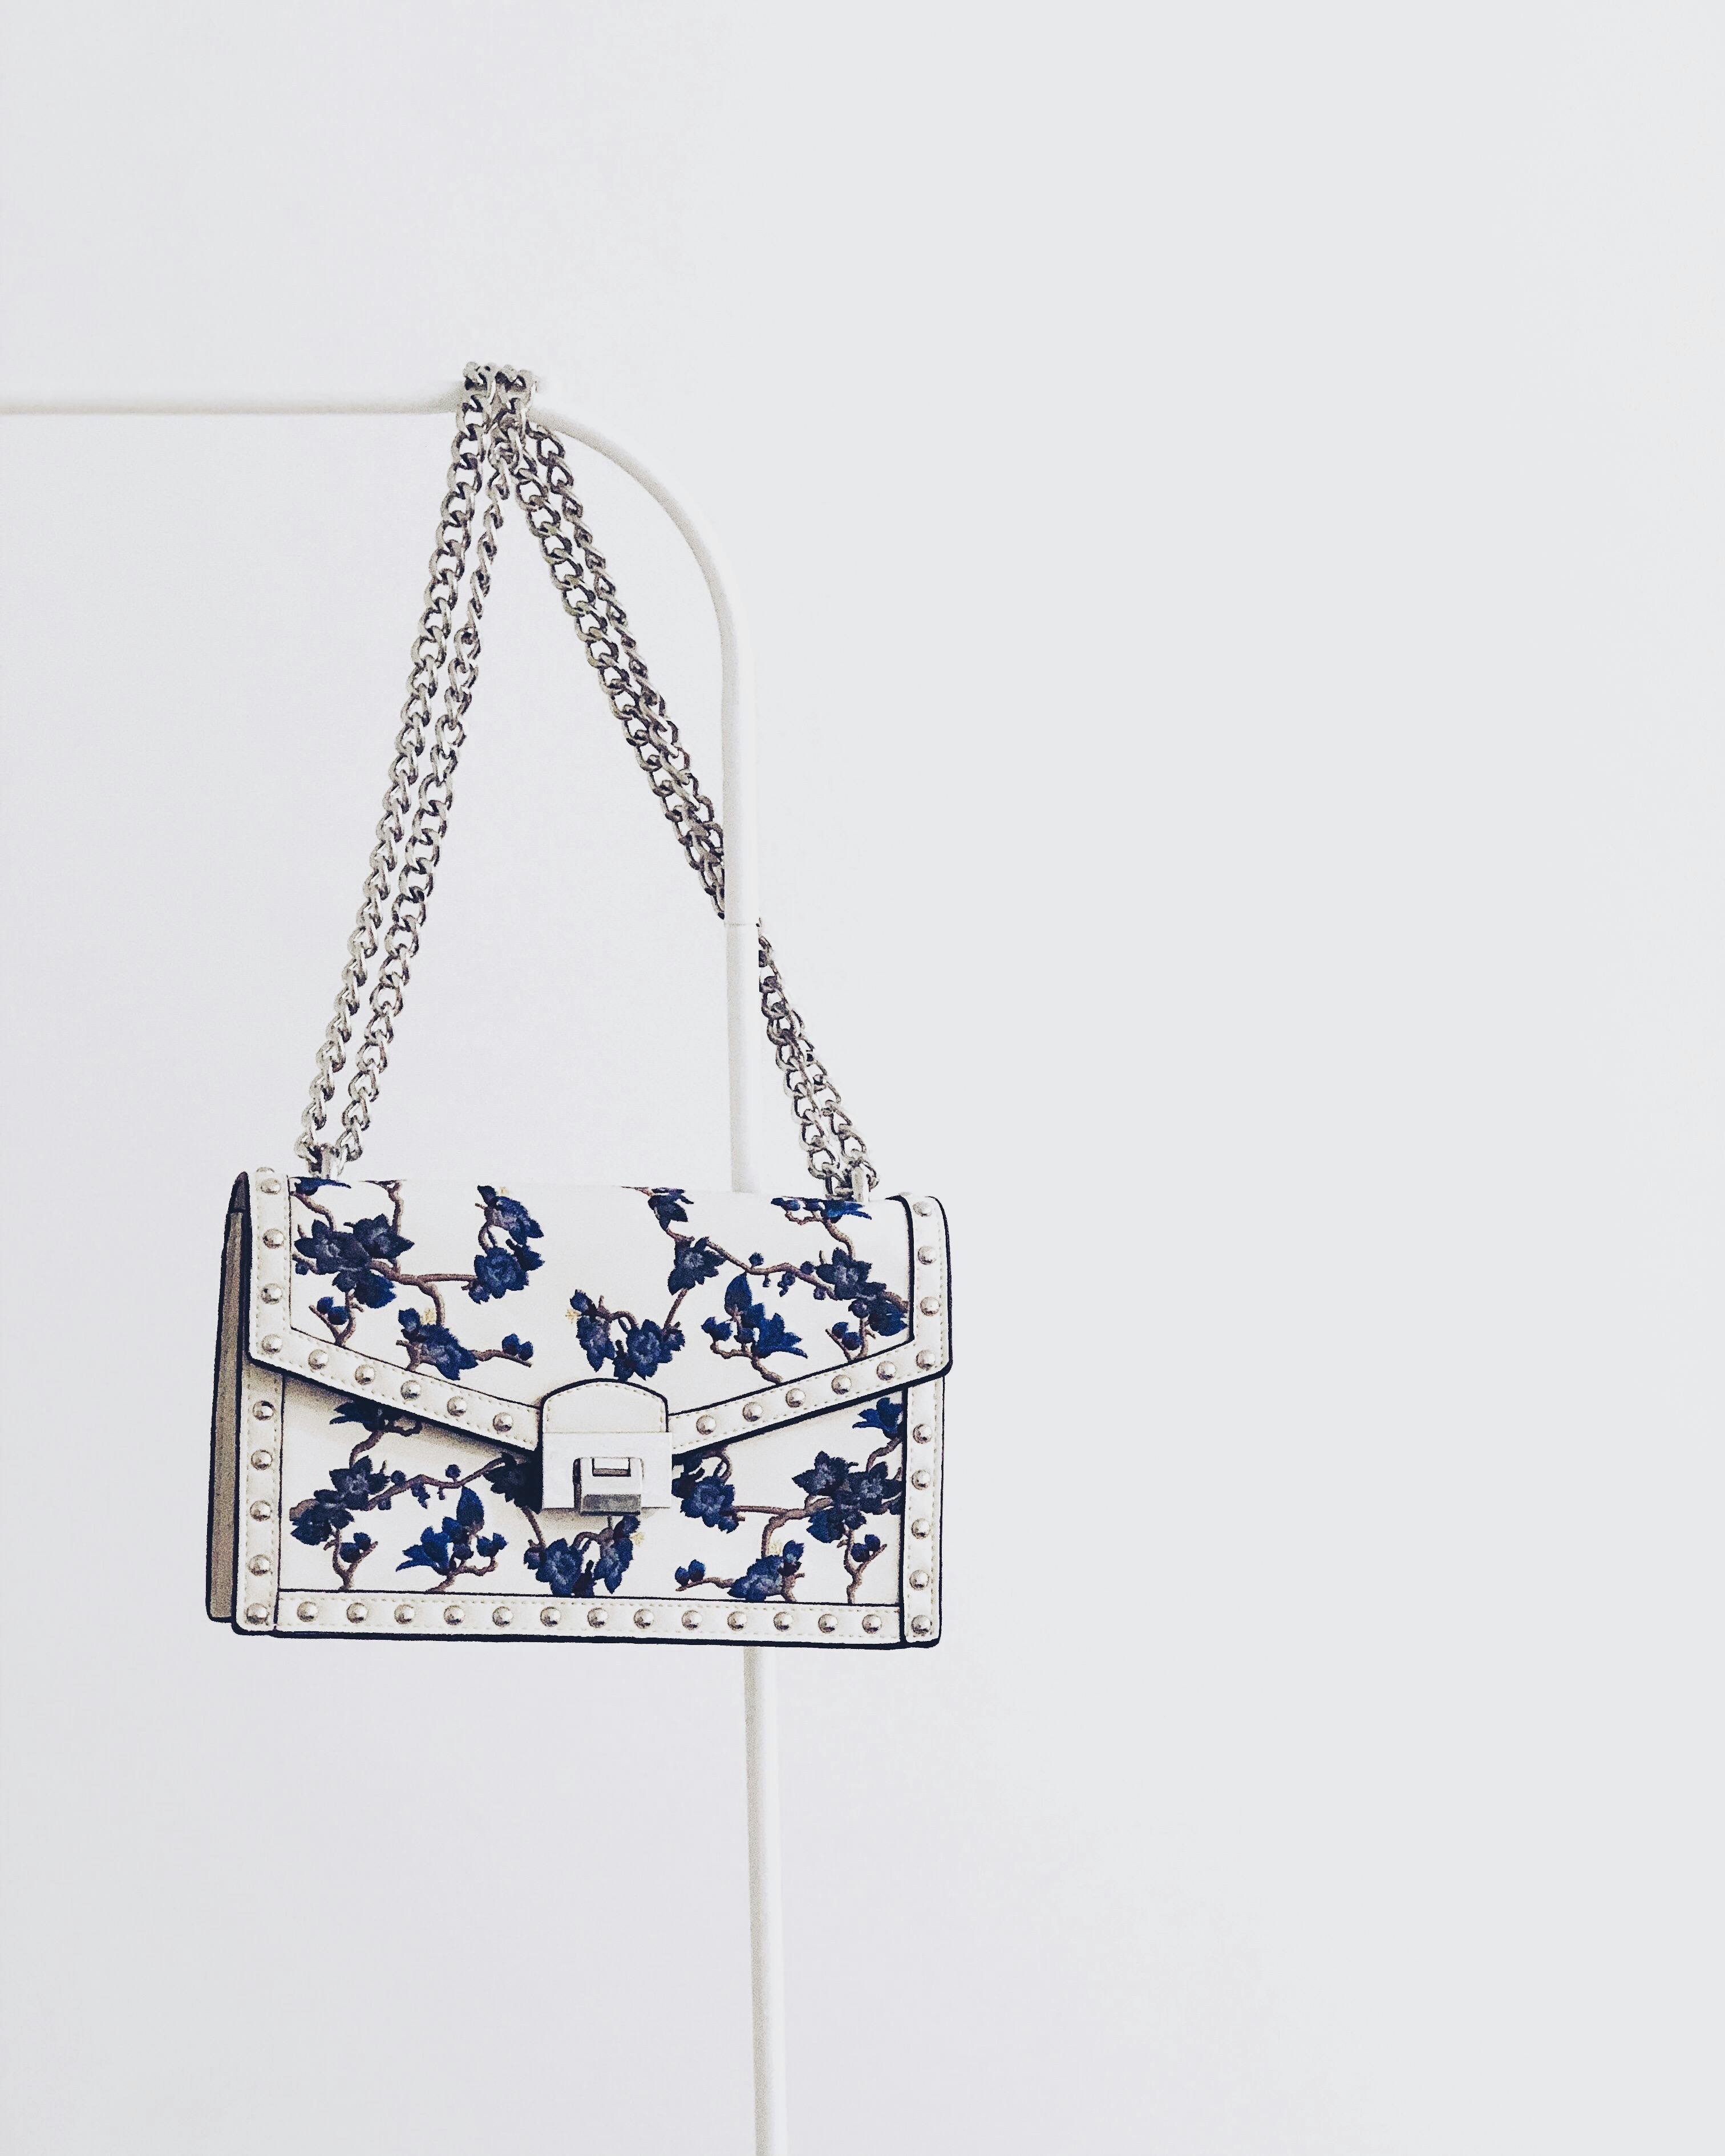 Un sac avec des détails bleus | Source : Pexels